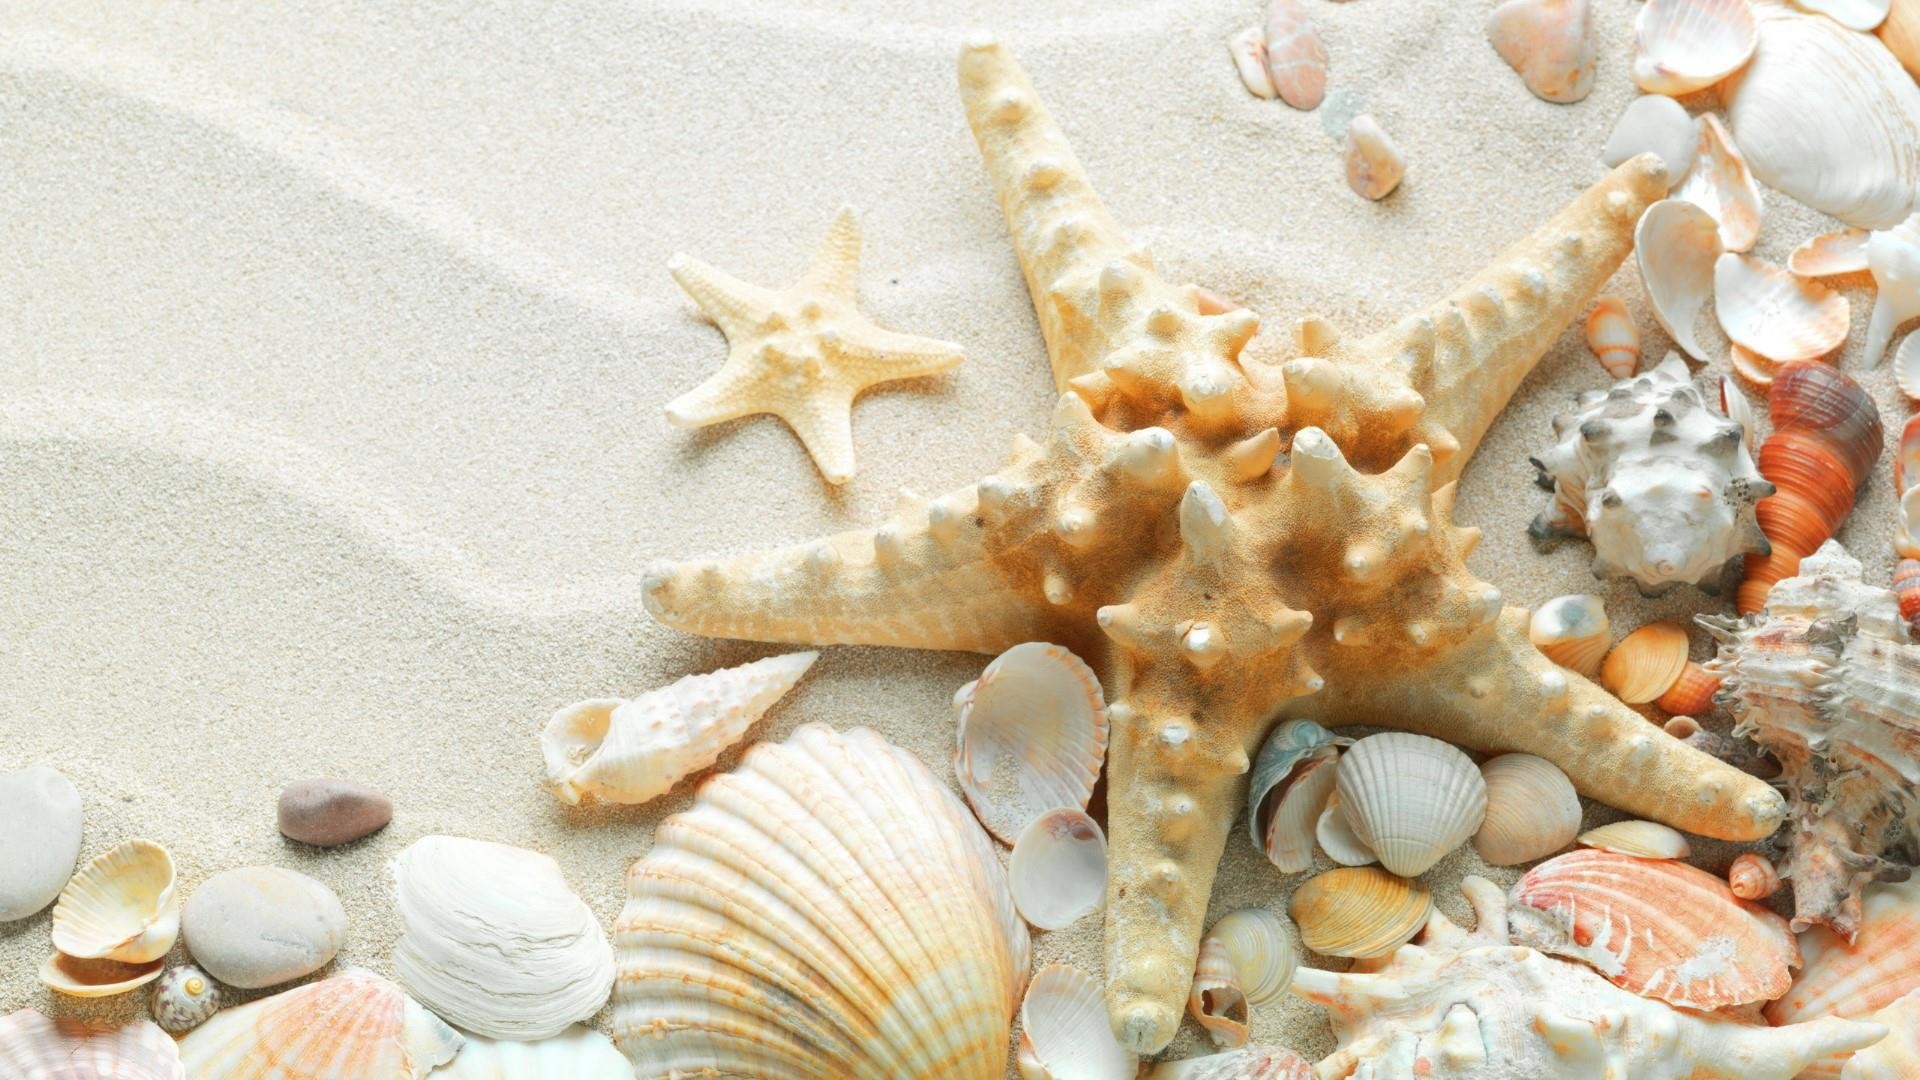 1920x1080, Starfish And Seashells On Sand Wallpaper - Sea Shells And Sand - HD Wallpaper 